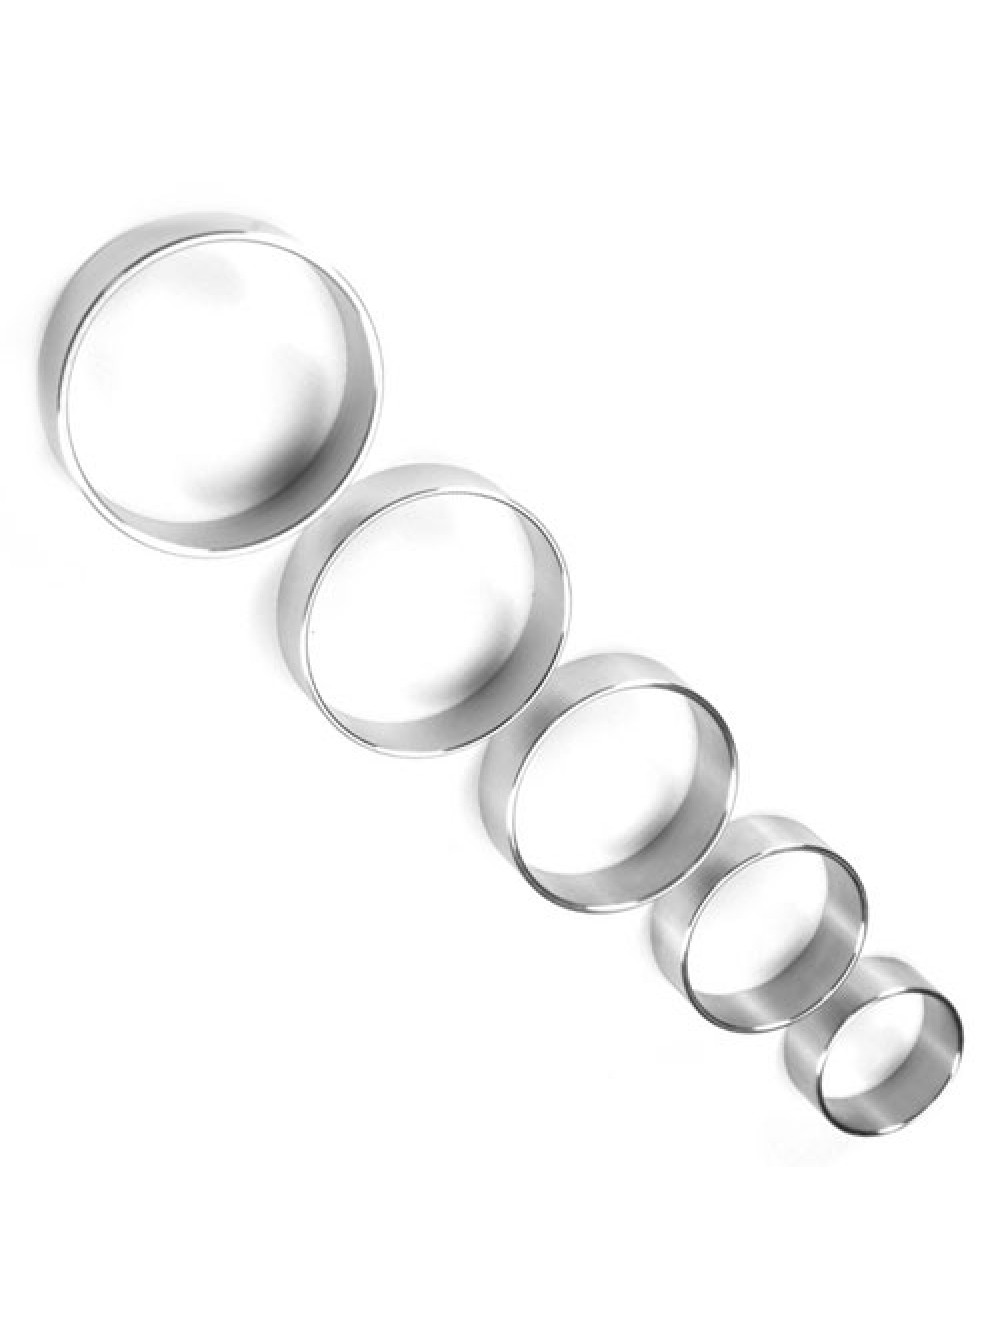 Sottile di metallo 1,35 pollici di diametro Cock Ring